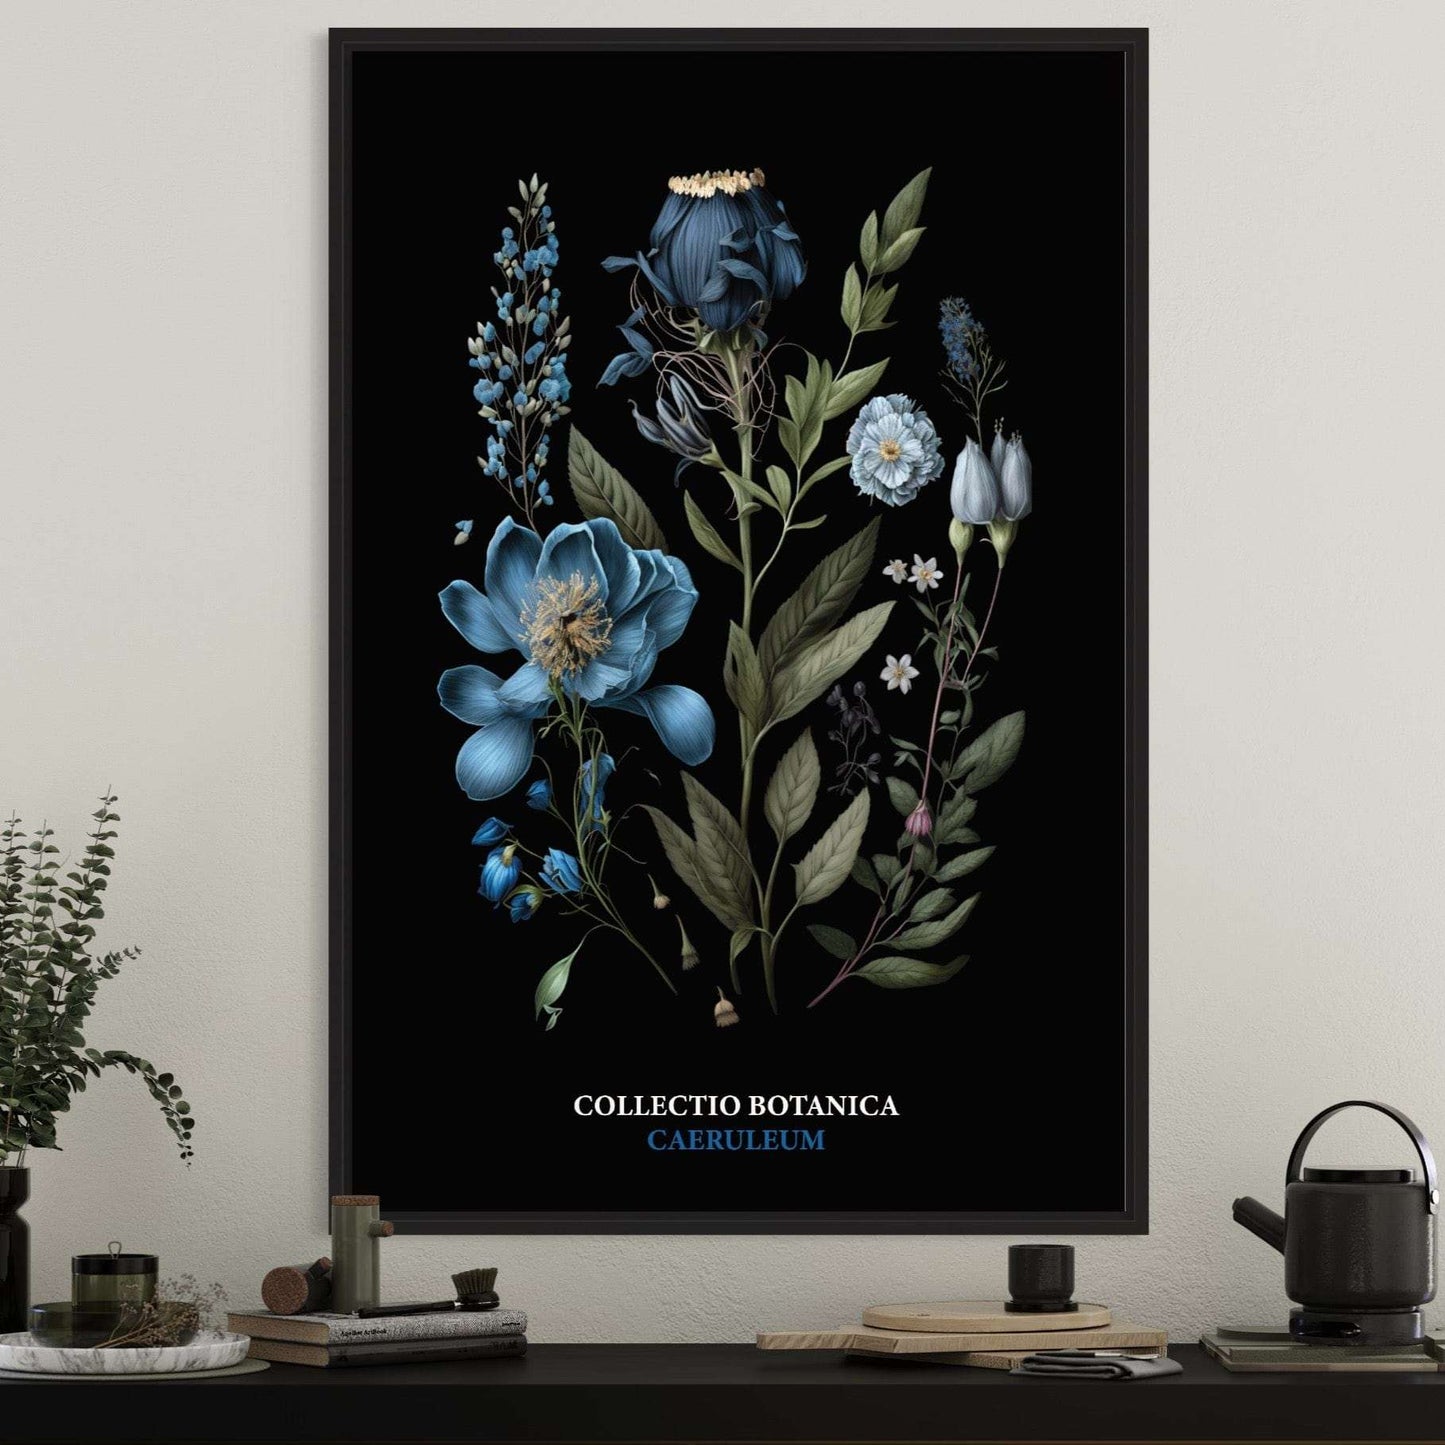 "Collectio Botanica" – Elegante Botanische Kunstprints Caeruleum | Blau / A4 - 21 x 29.7cm Prints & Art Dreizack oesterreich handgemachte geschenke in wien